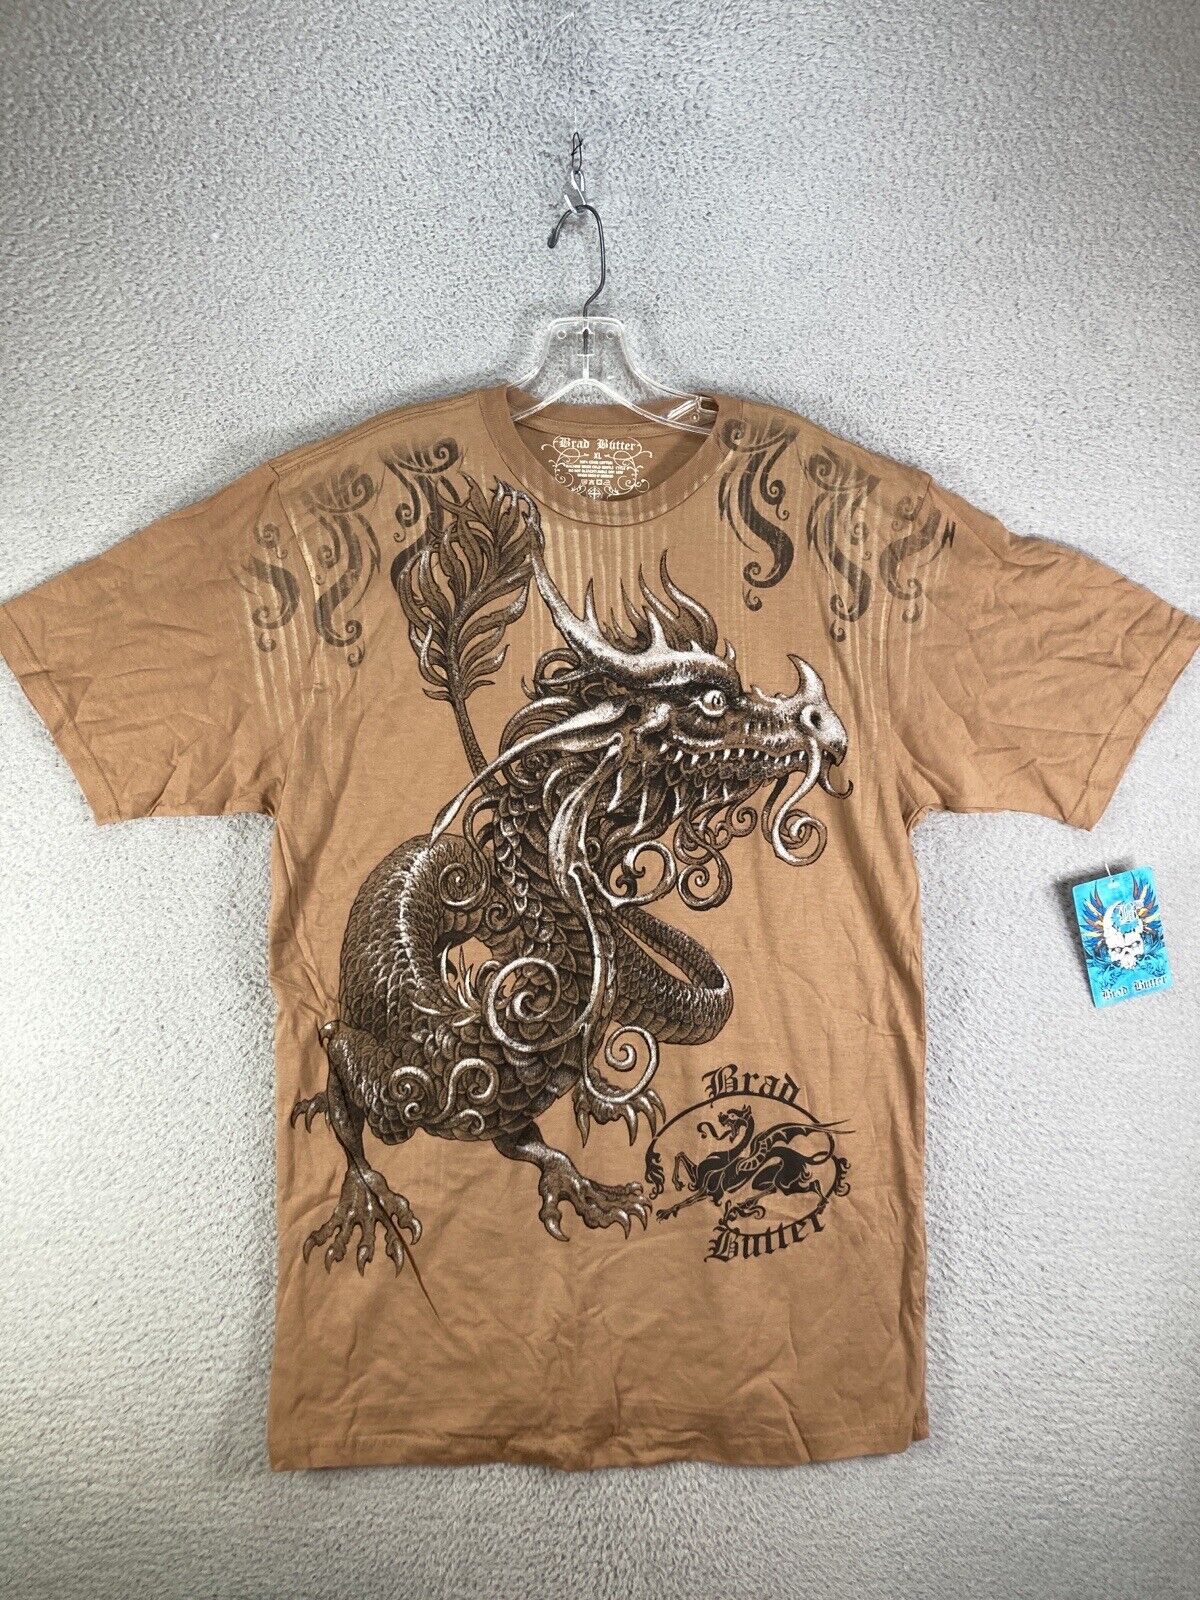 VTG Brad Butter Shirt Mens Extra Large Brown Dragon Skull Cross All Over Print